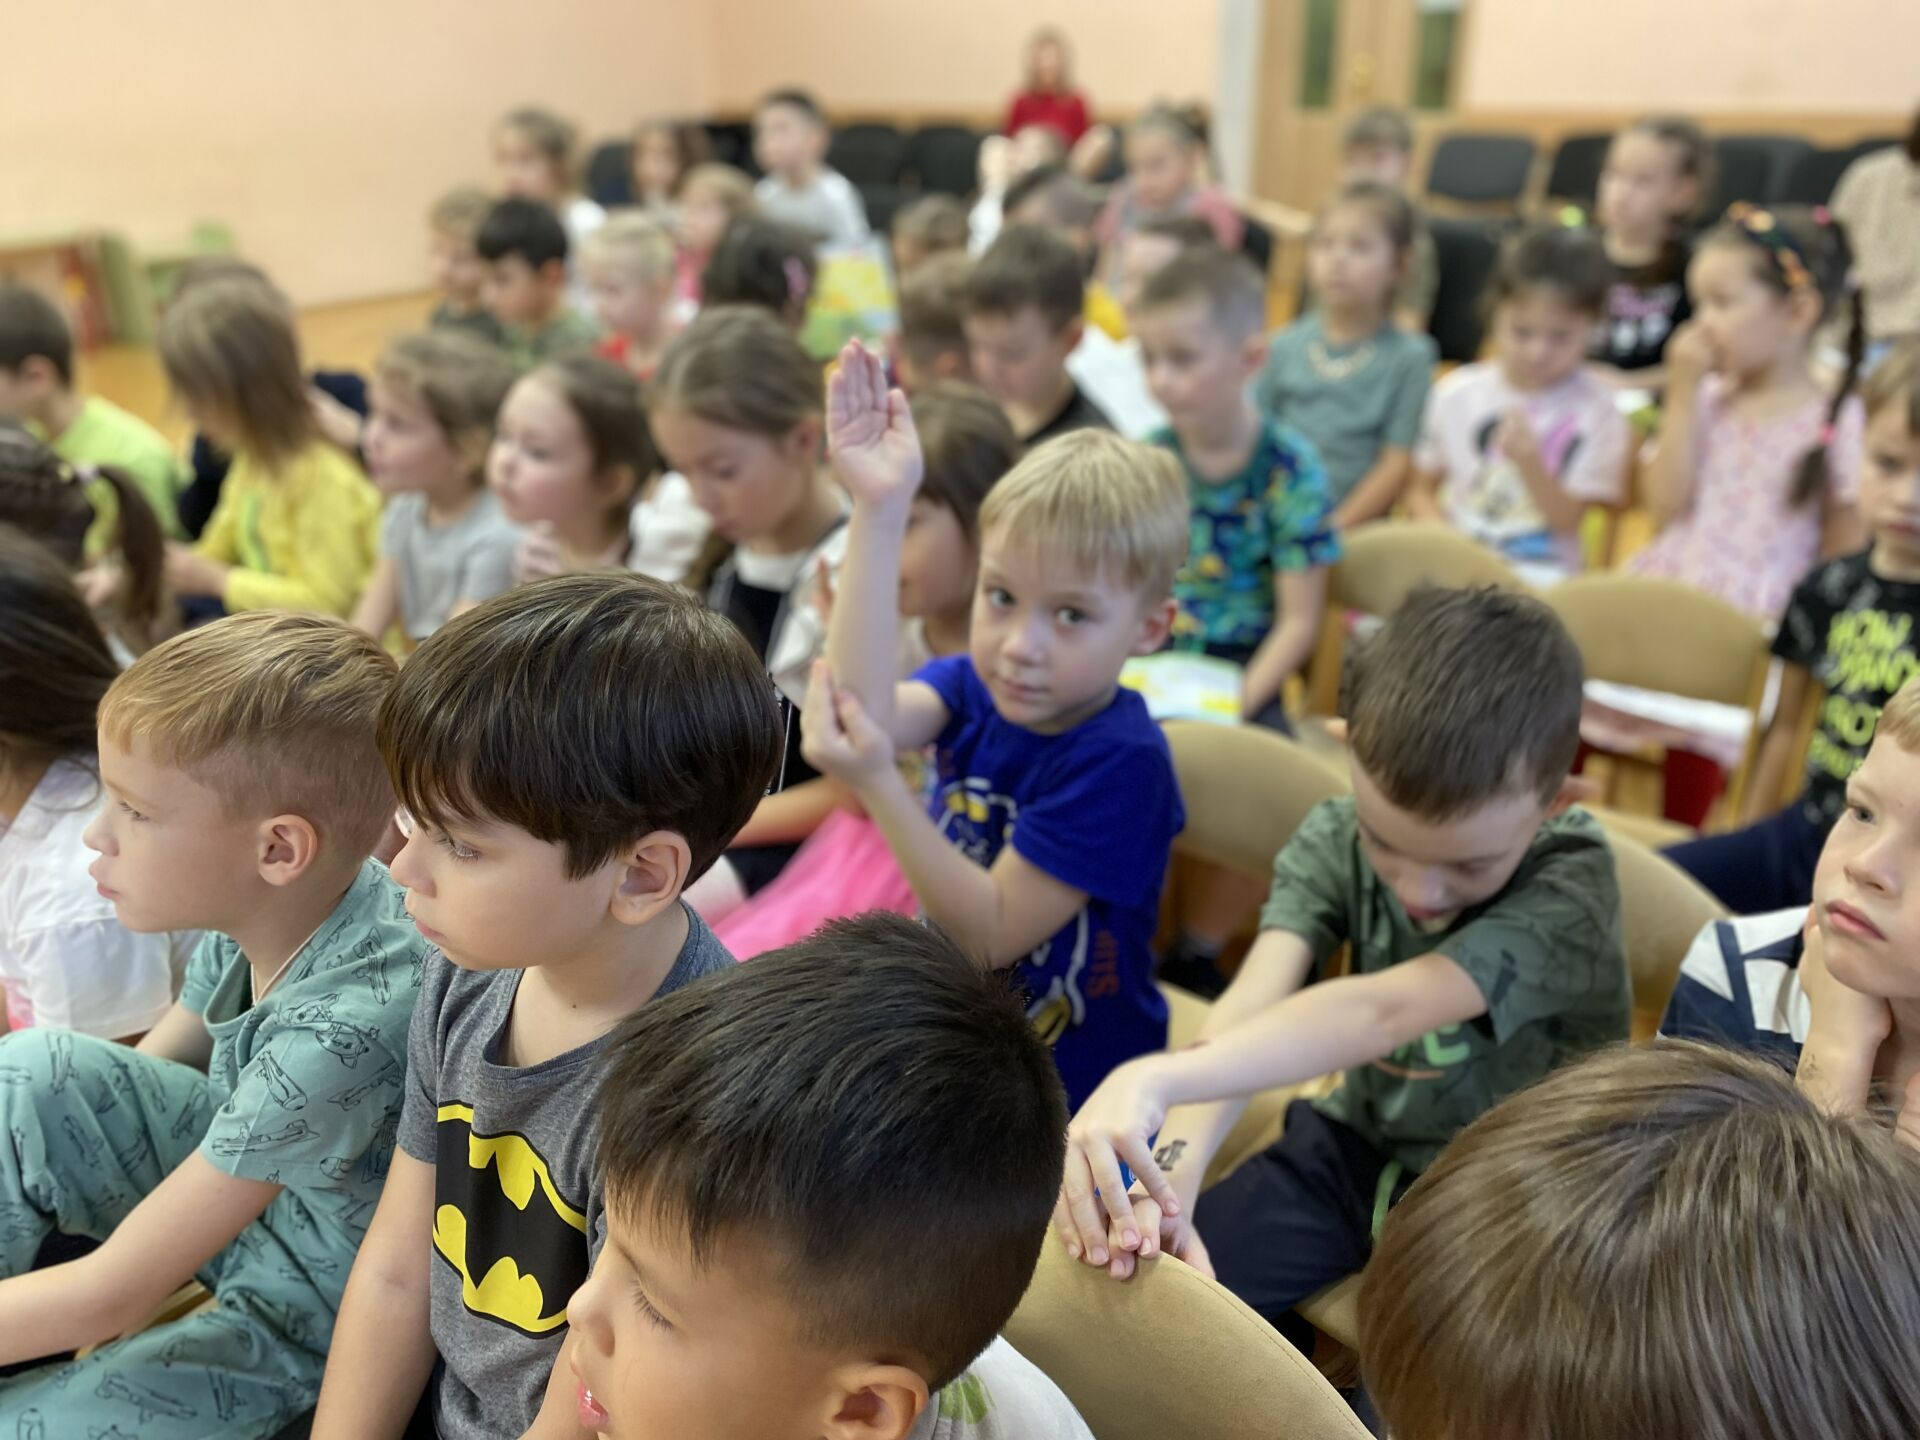 Полицейские и общественники Альметьевска рассказали детям об их правах и обязанностях